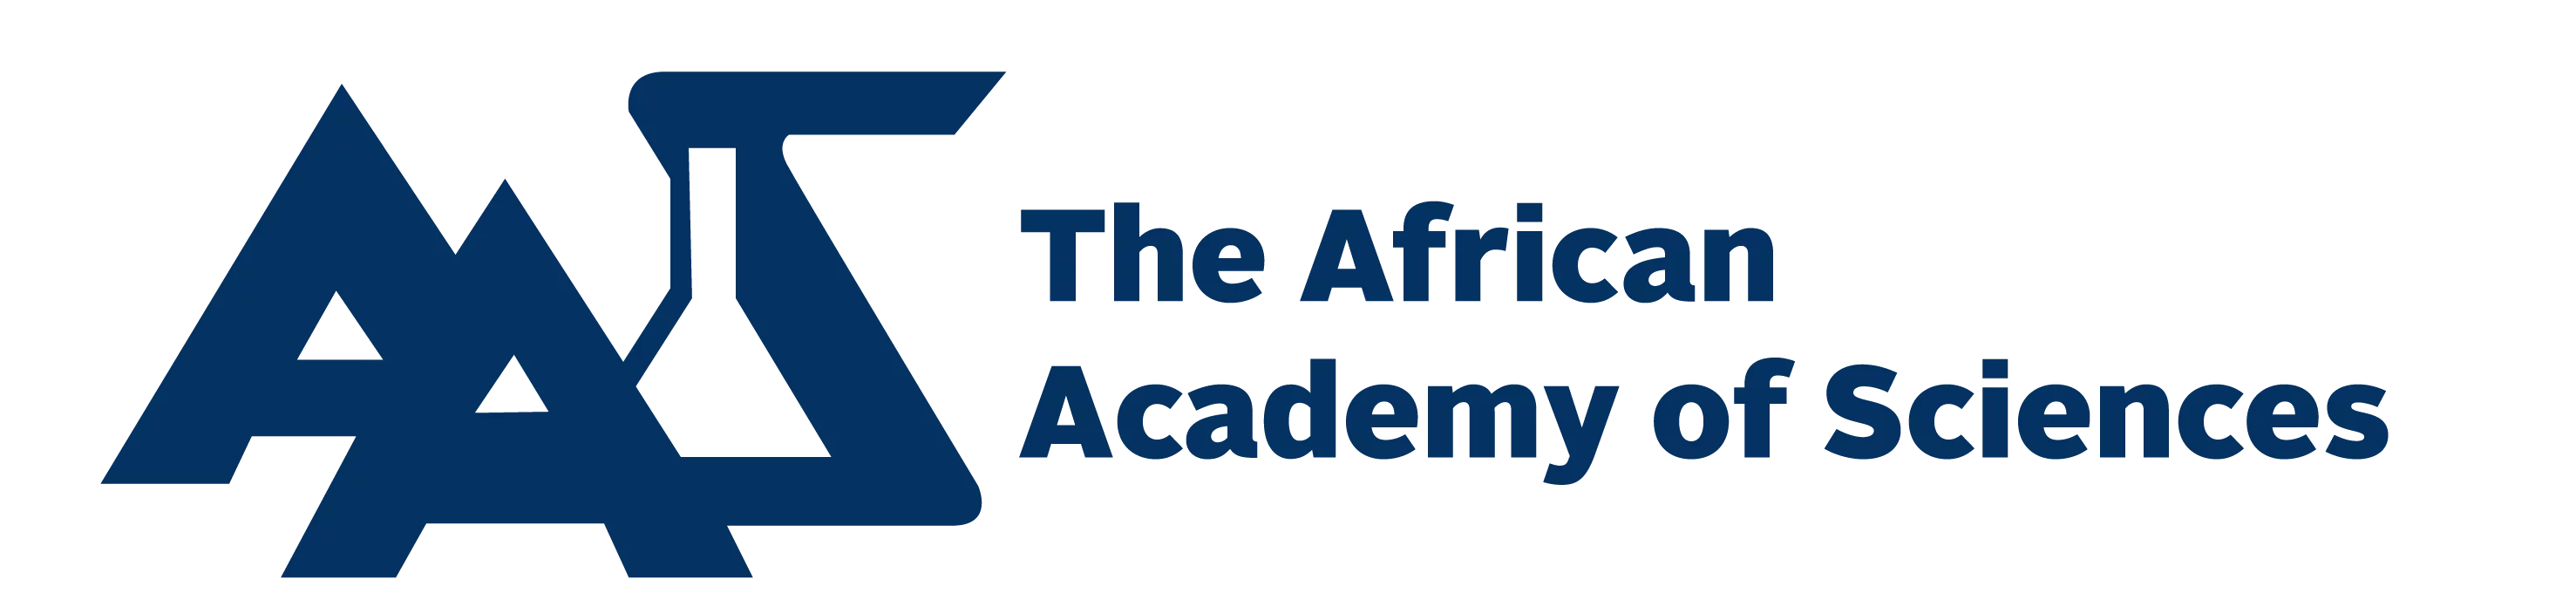 Appel au candidature pour l’Académie africaine des sciences (AAS) 2019 Fonds pour la mobilité entre l’Inde et l’Afrique (AIMF)